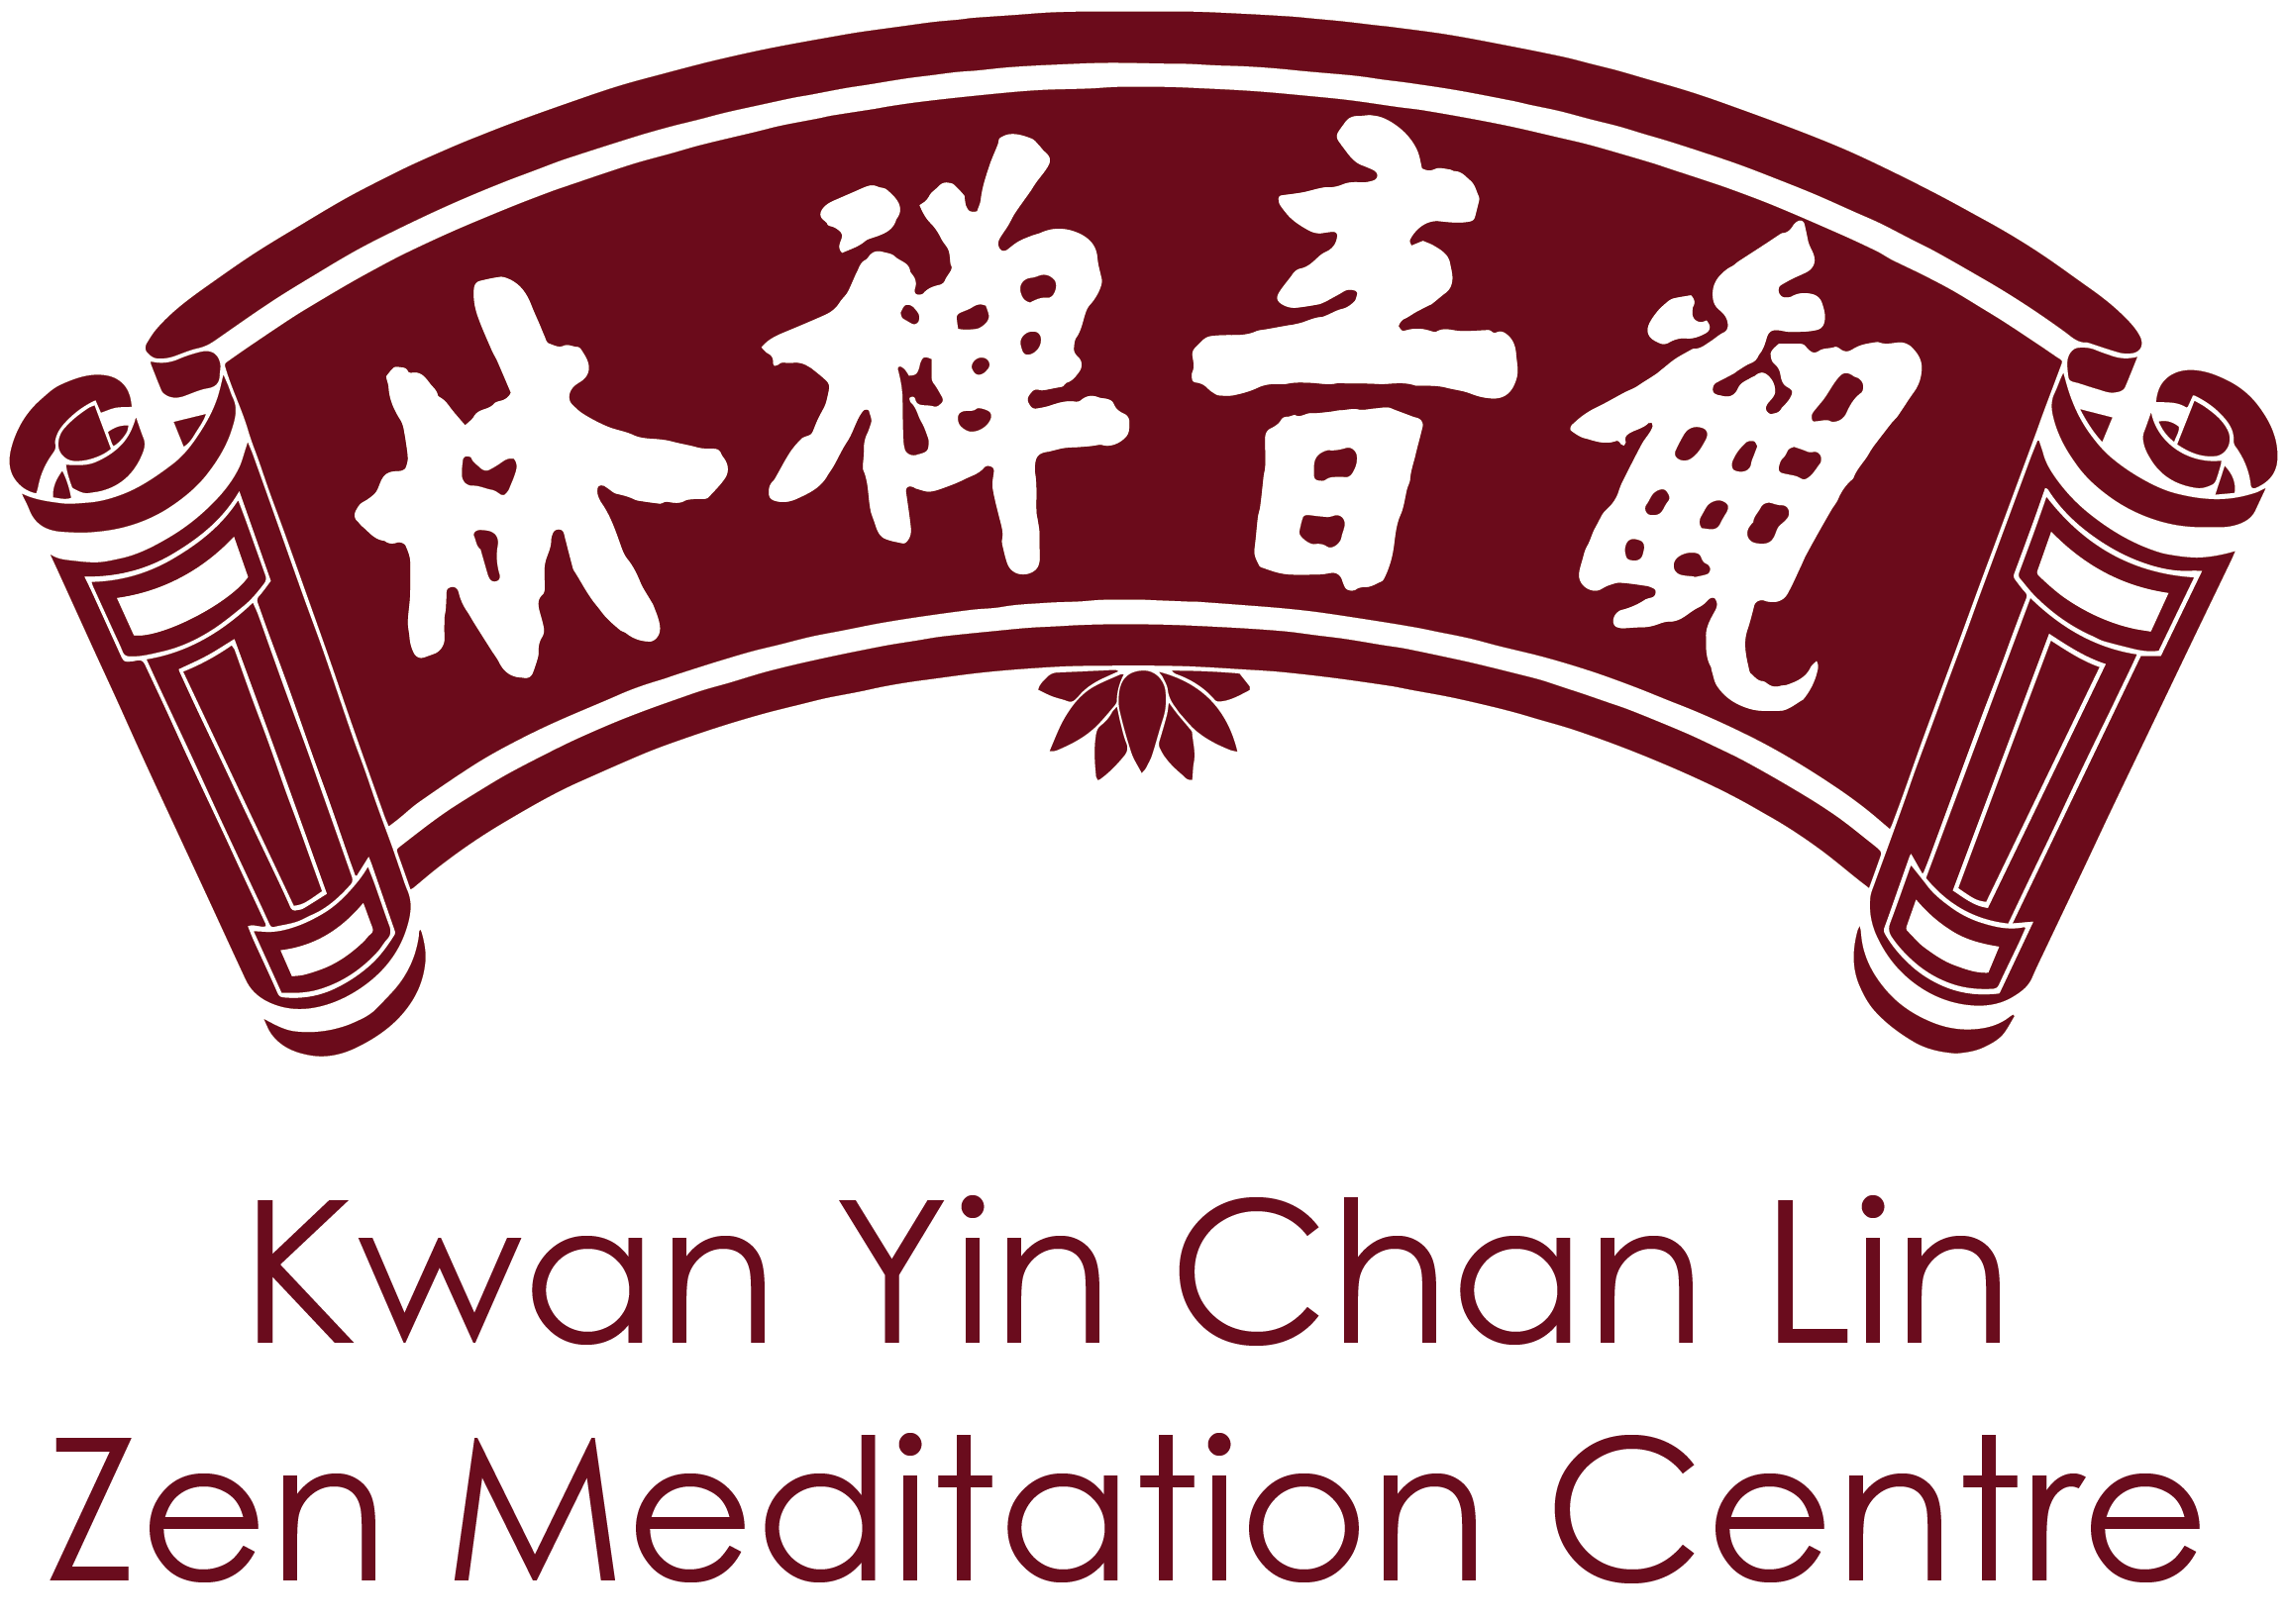 Kwan Yin Chan Lin Zen Meditation Centre